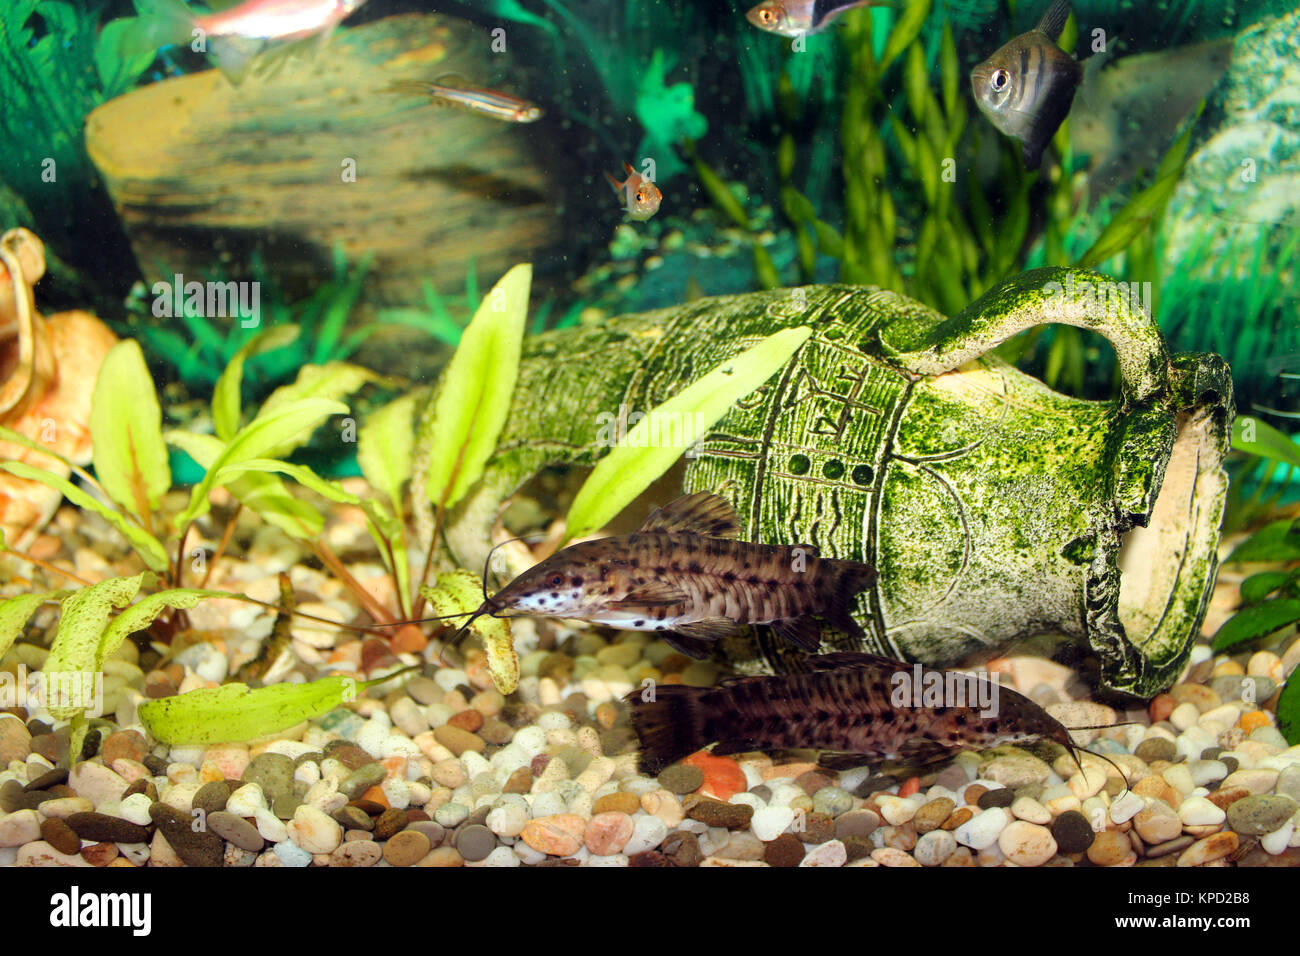 aquarium with swimming Hoplosternum thoracatum Stock Photo